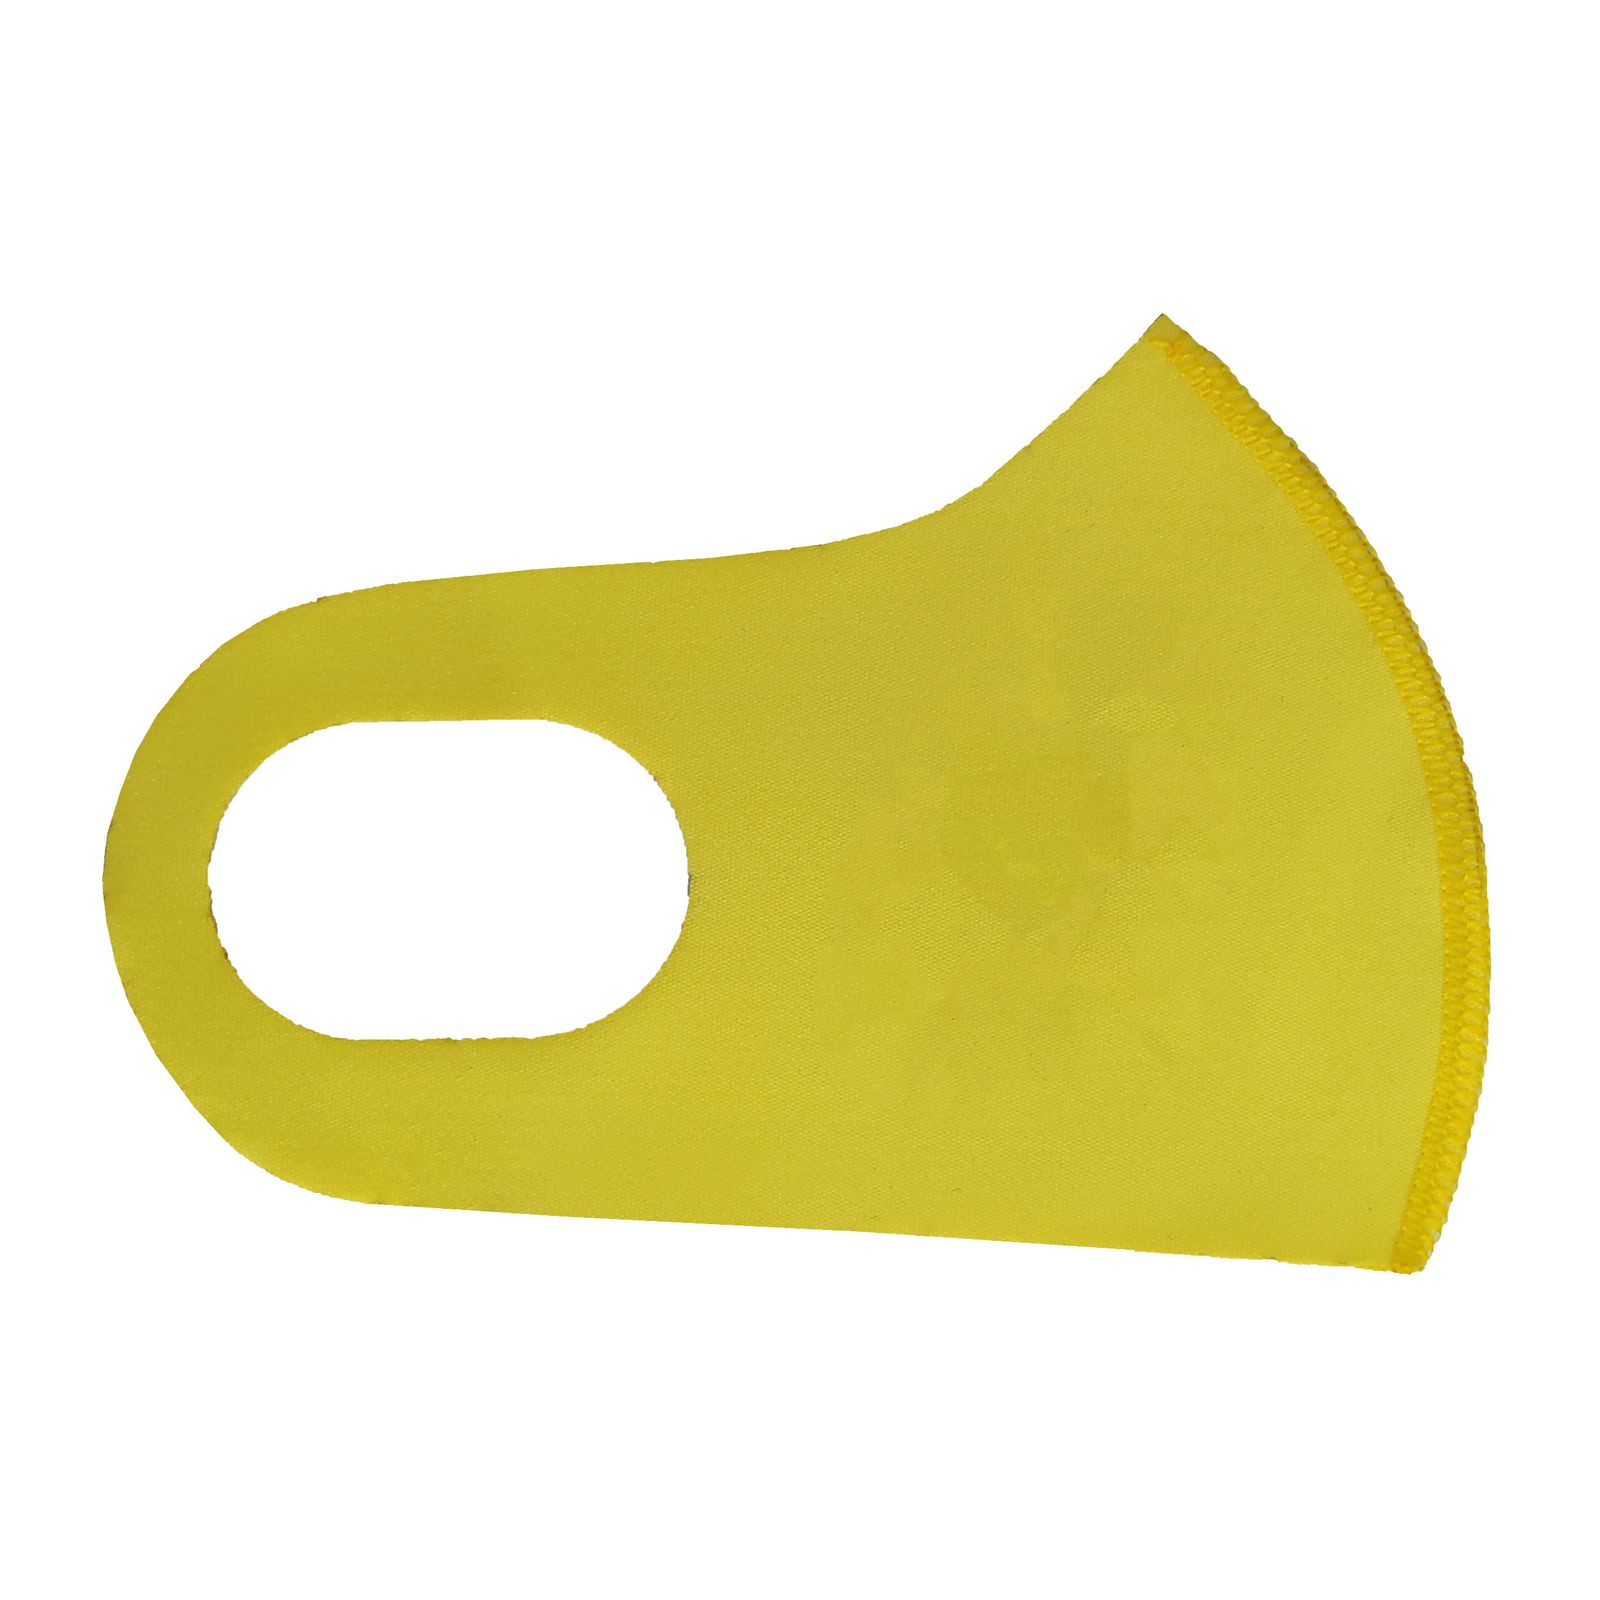 ماسک تزیینی بچگانه طرح BRAVE کد 30694 رنگ زرد -  - 2